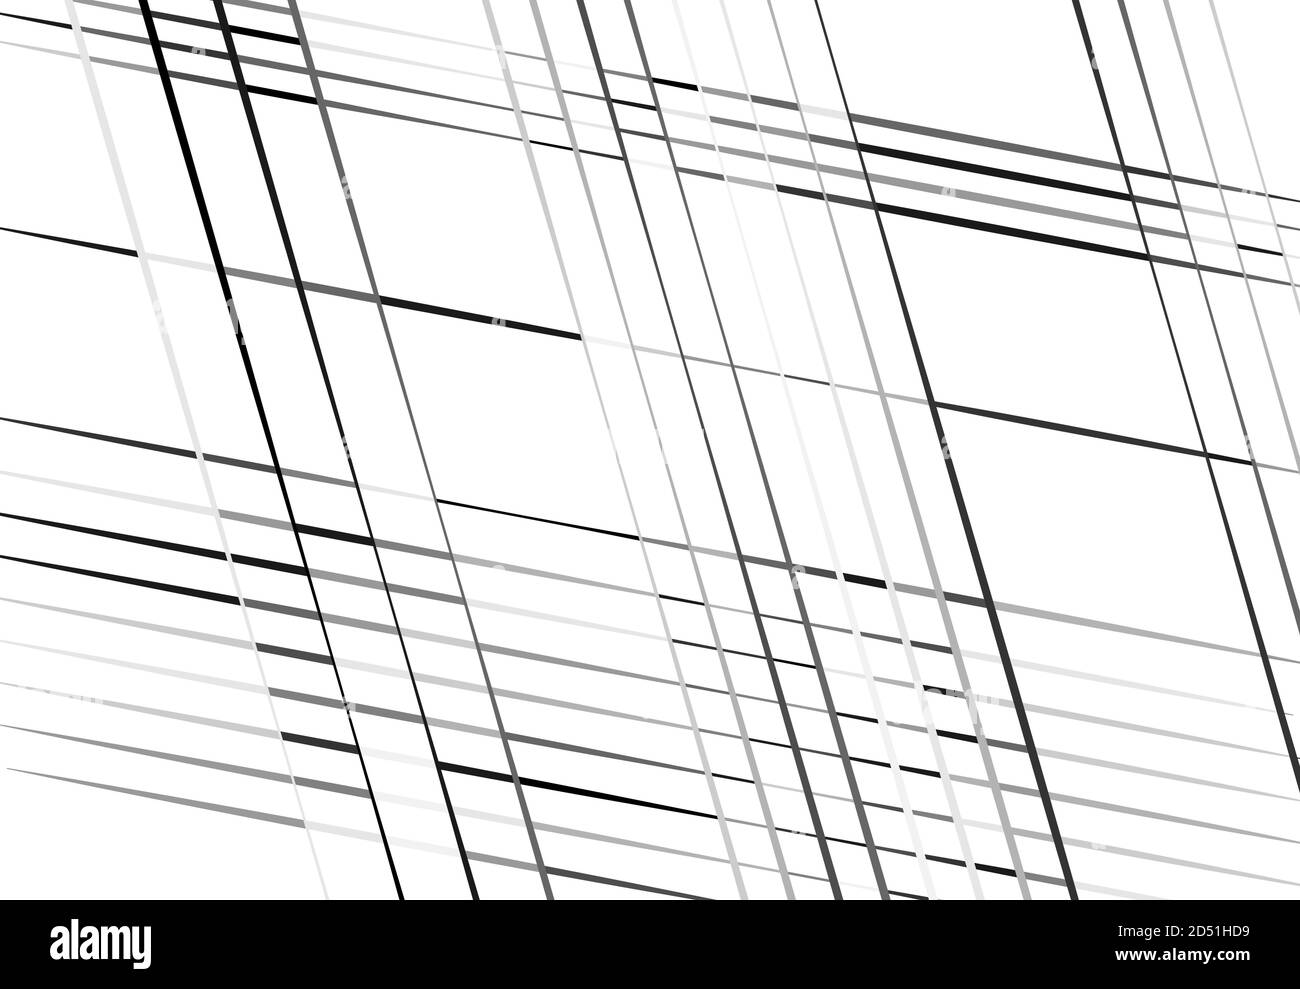 Diagonale, Neigung, schräges und schräges Gitter, abstrakter Netzhintergrund, Muster Stock Vektor